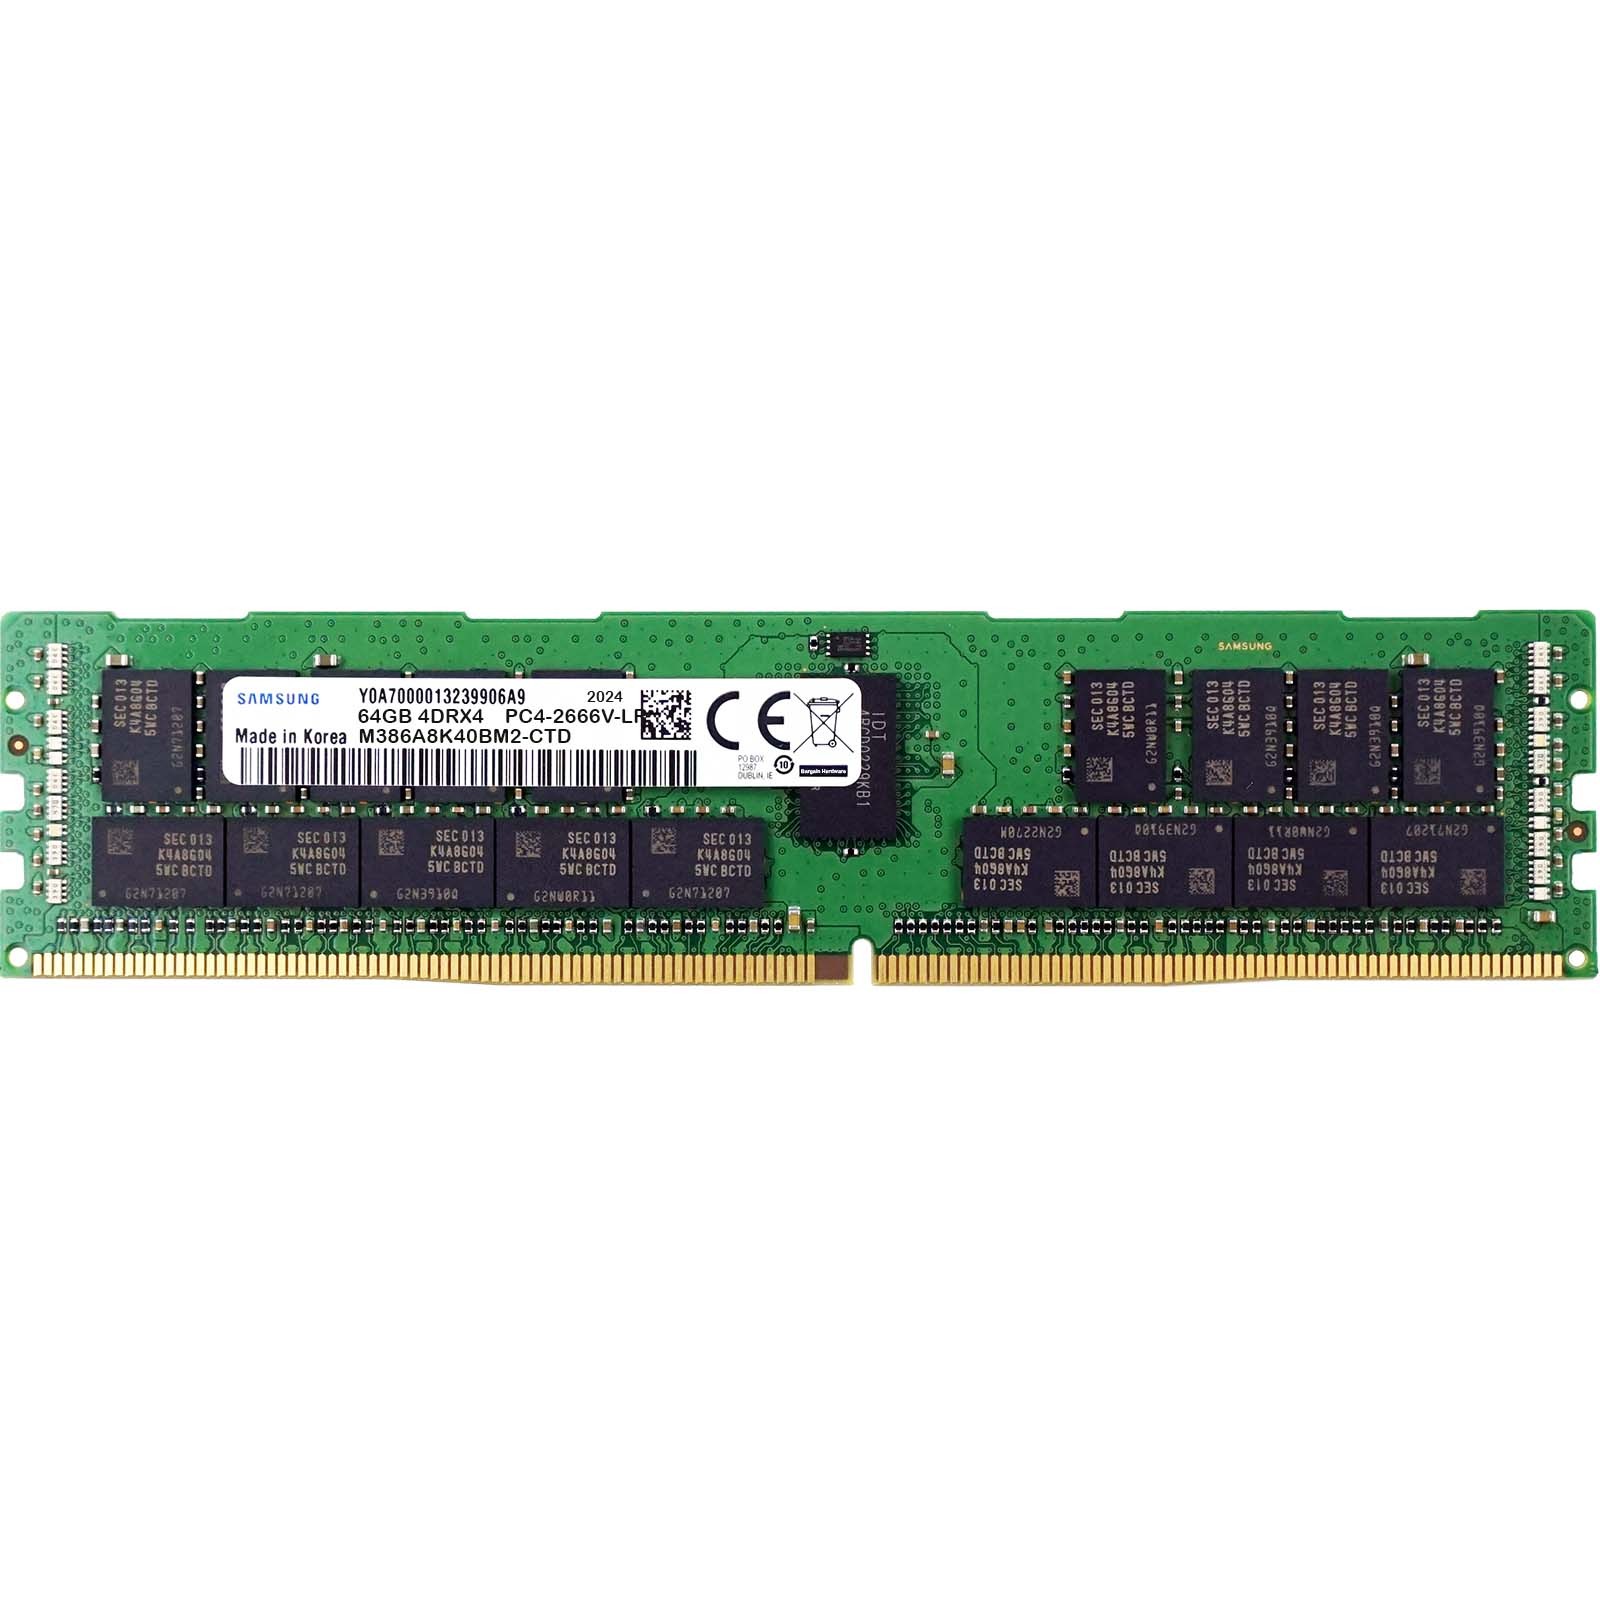 Samsung (M386A8K40BM2-CTD) - 64GB PC4-21300V-LR (4DRx4, DDR4-2666MHz) RAM